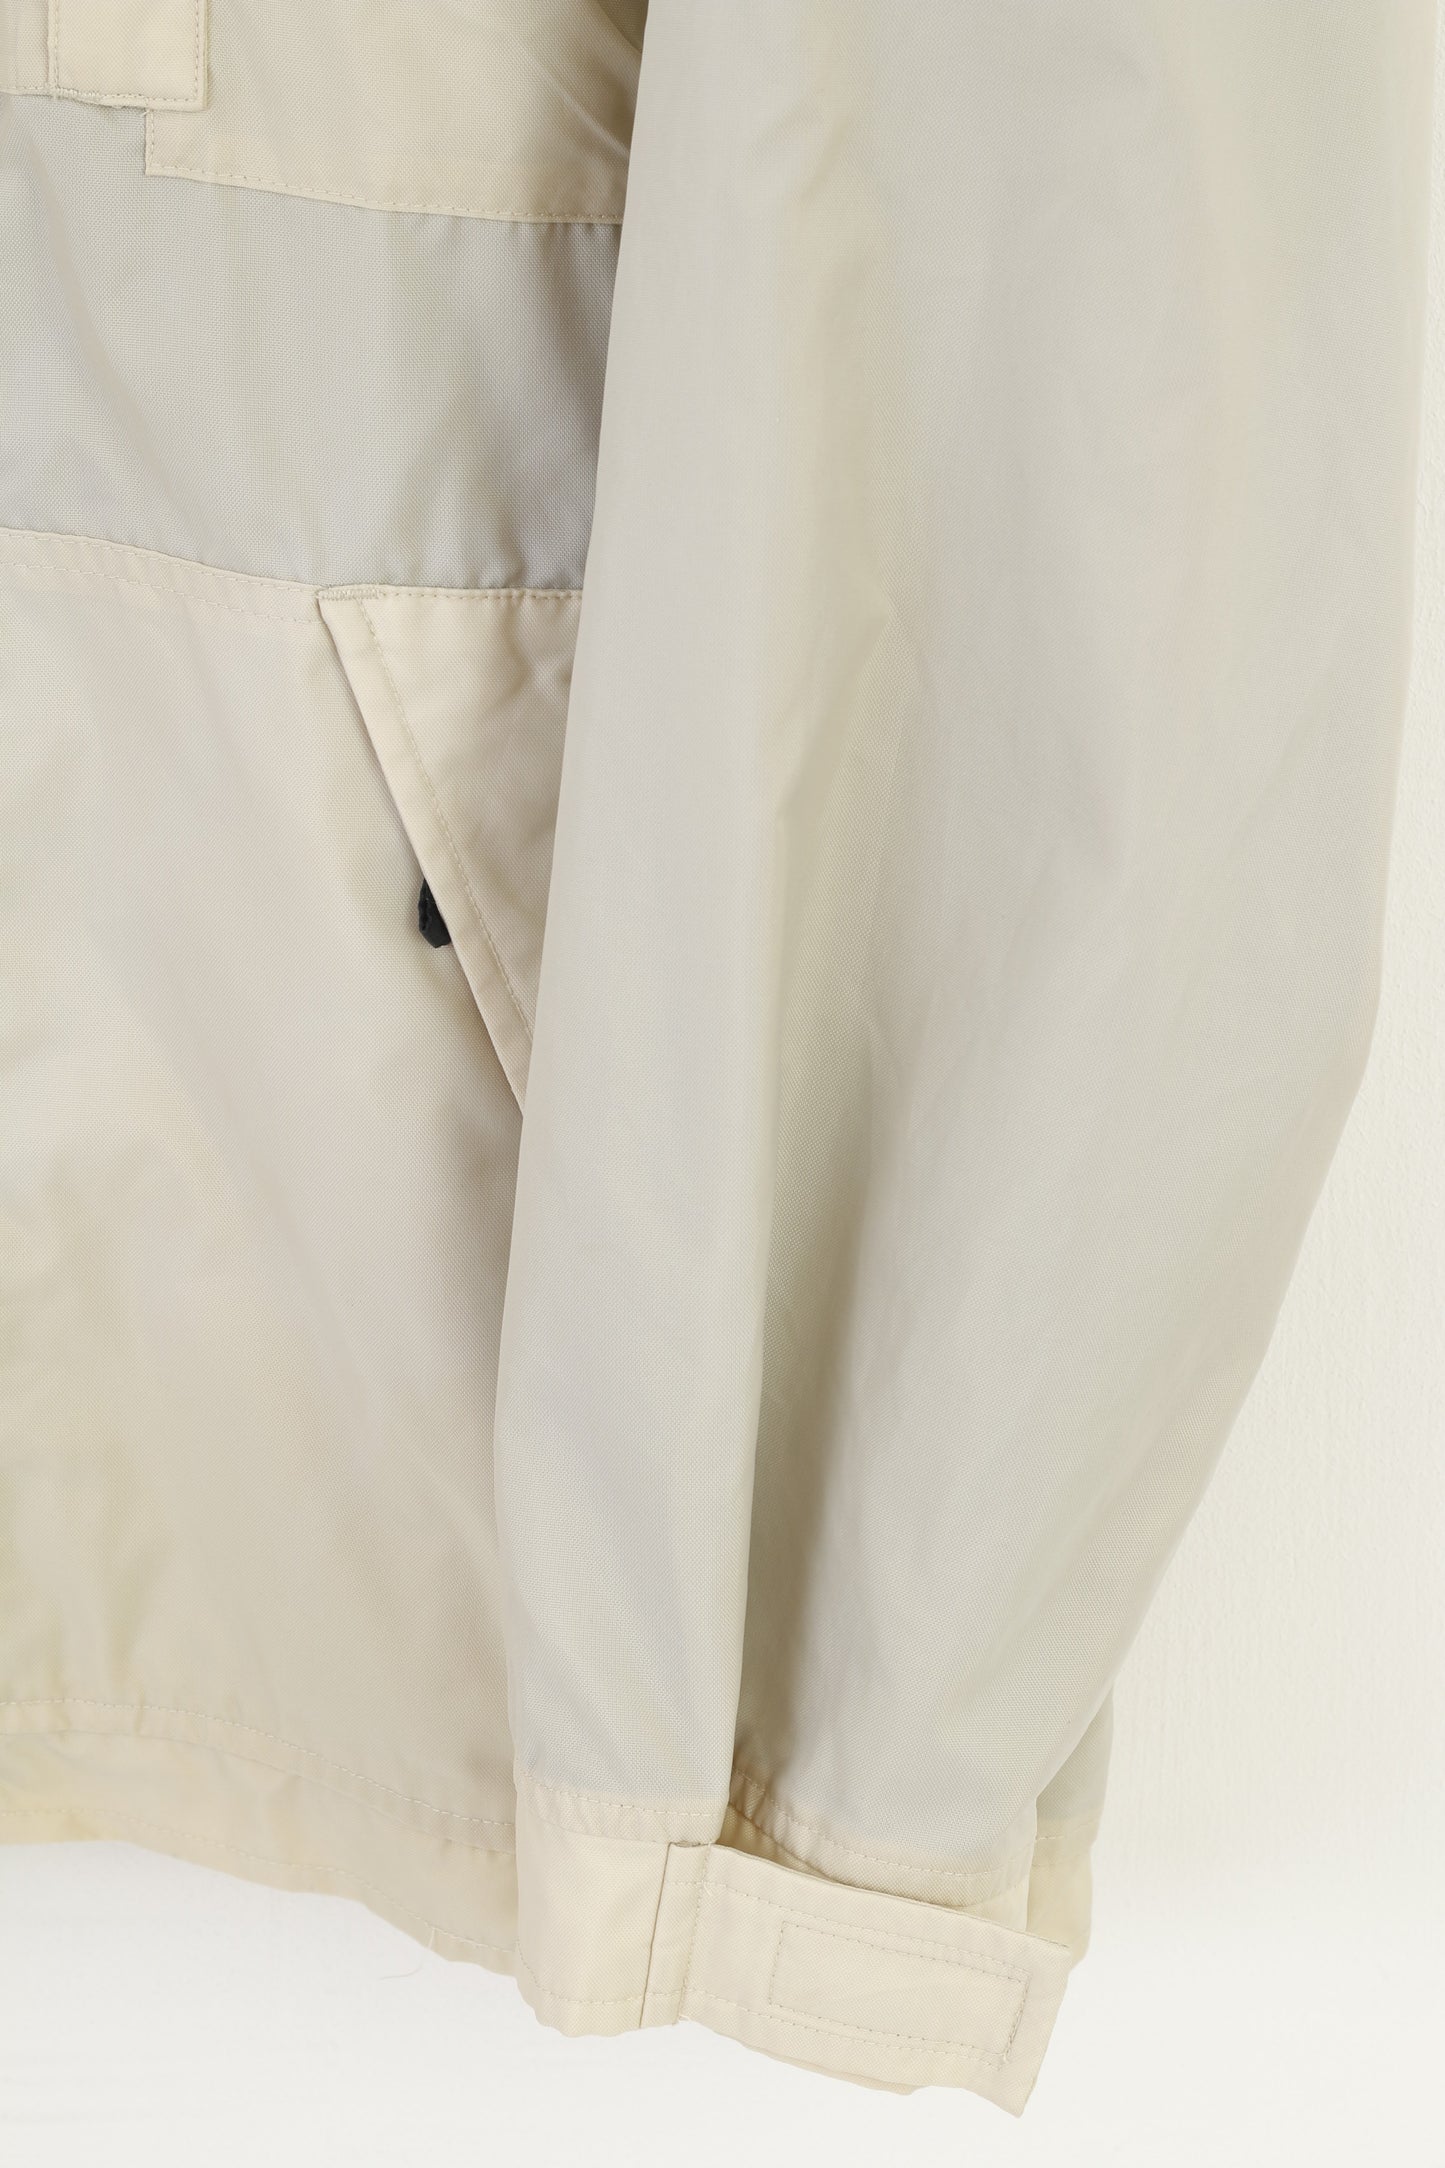 Champion Men L Jacket Beige Full Zipper  Nylon Vintage Pockets Outwear  Top